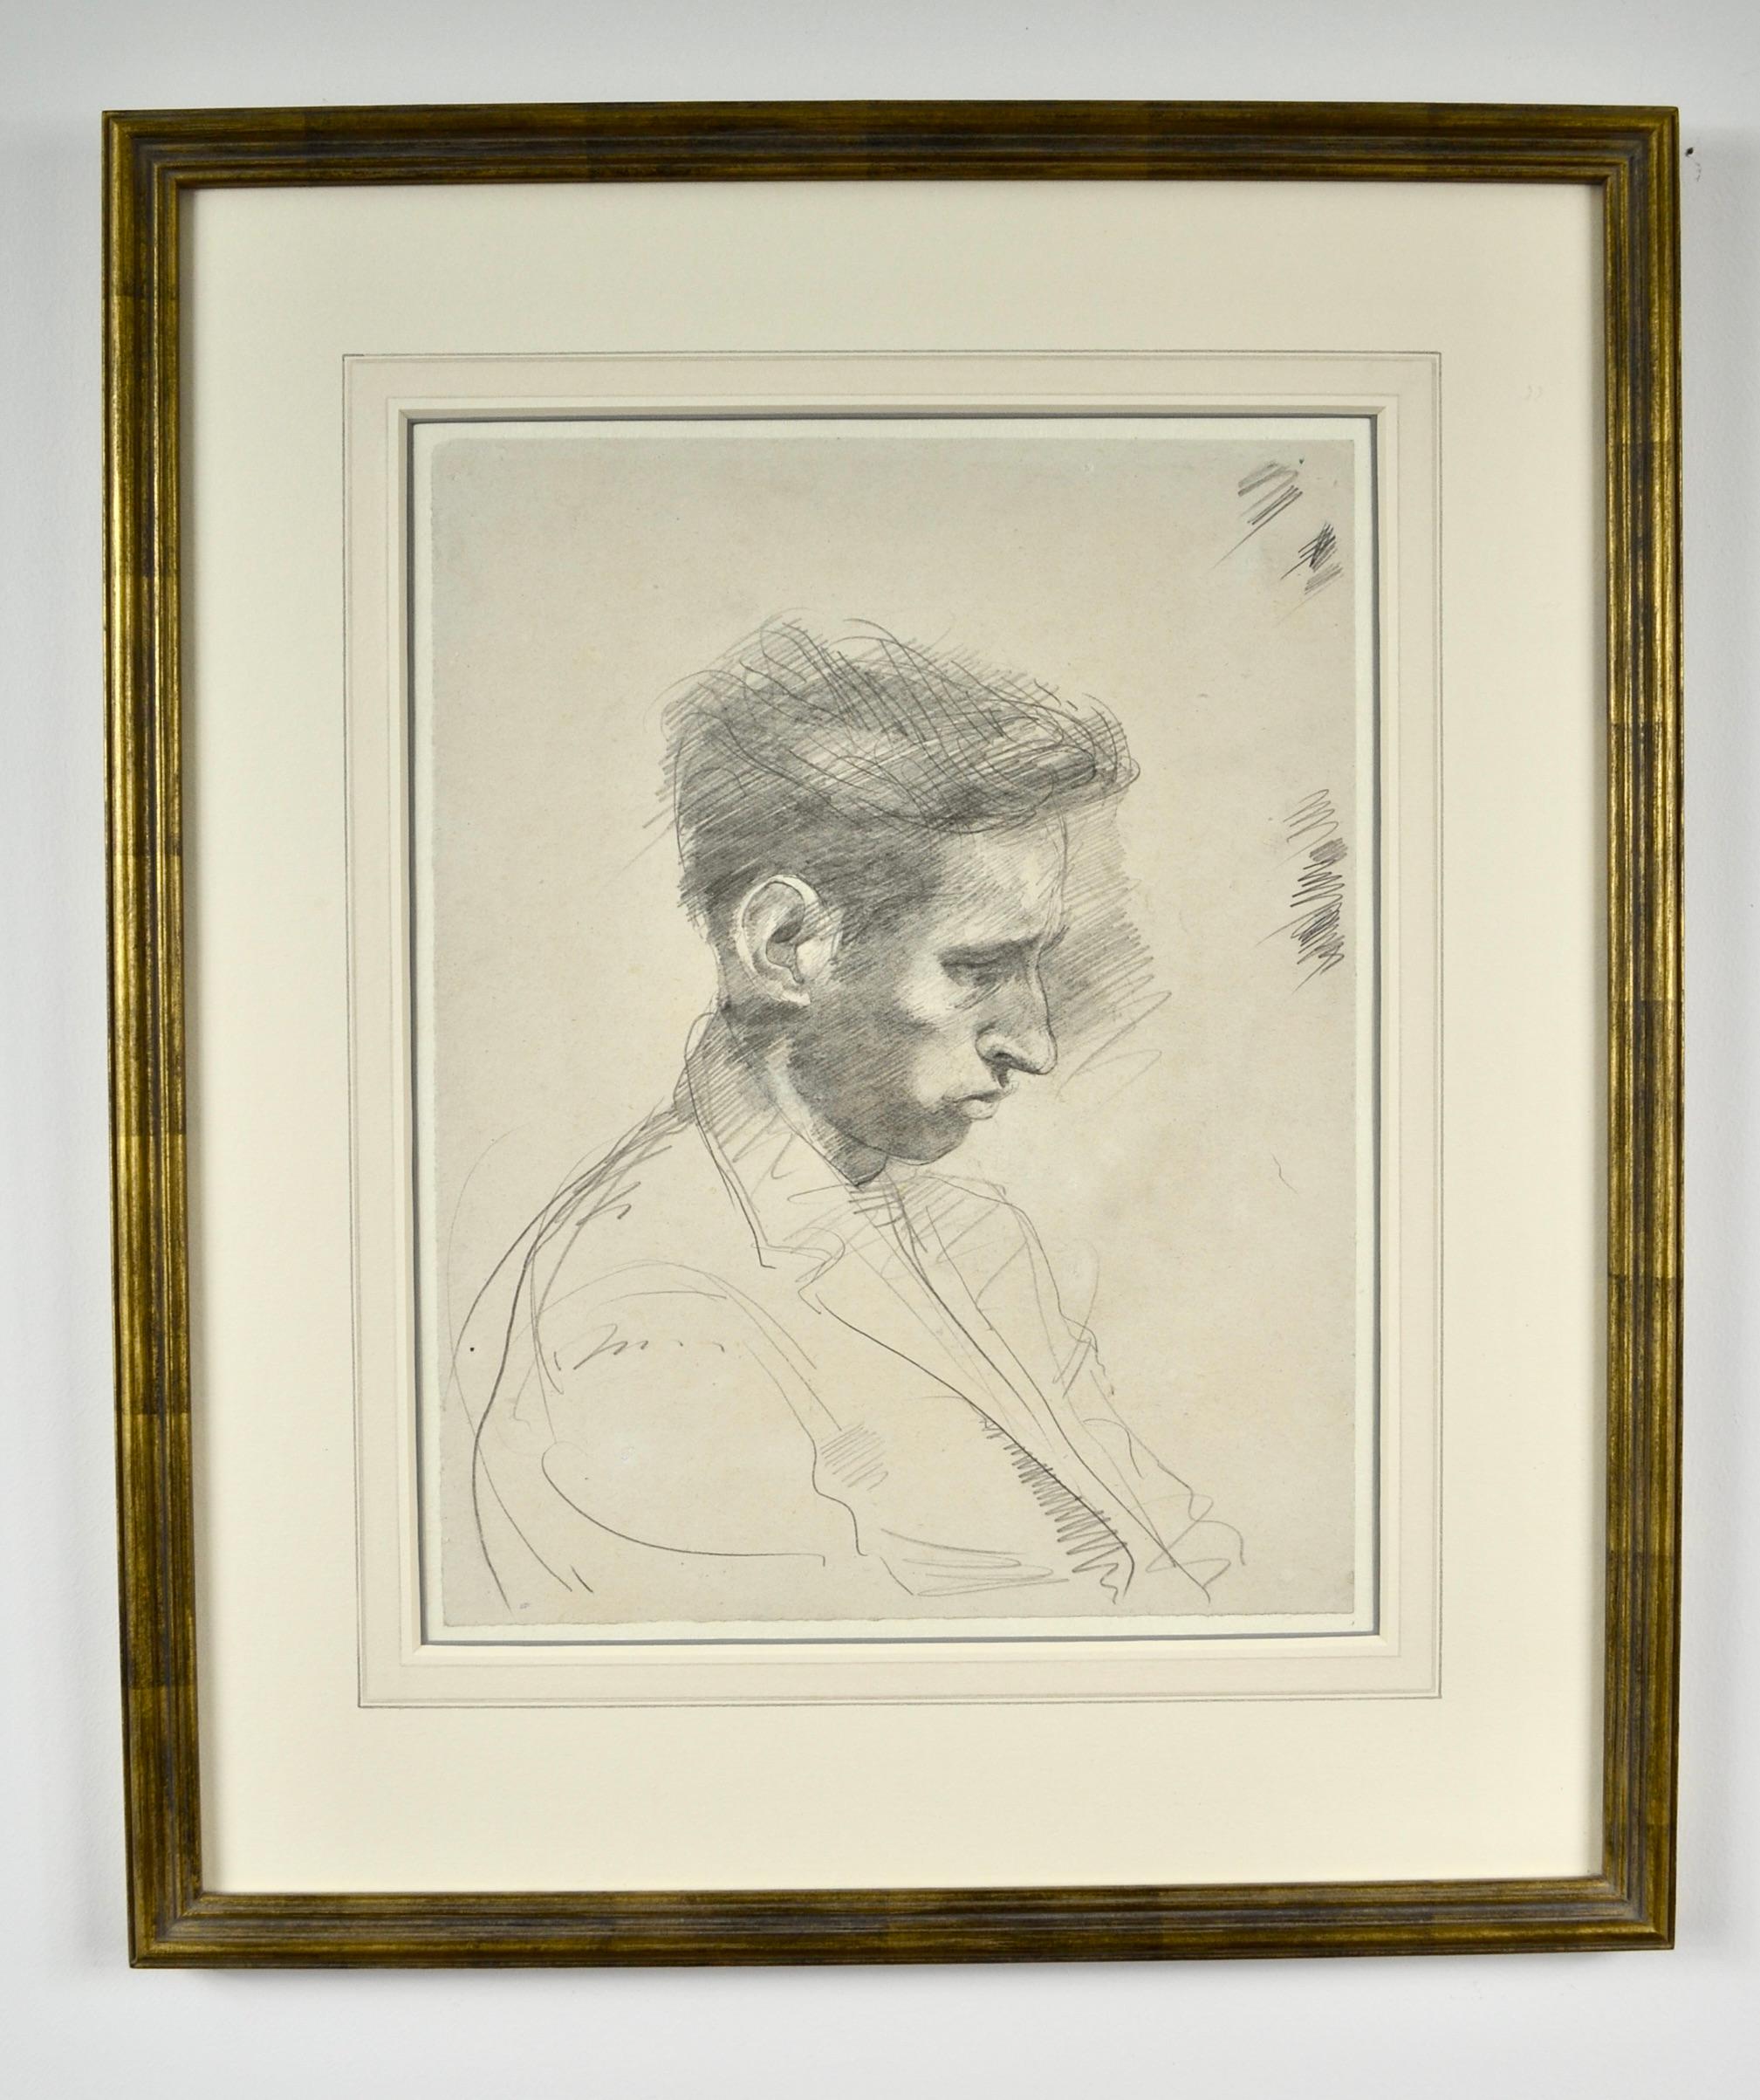 Bleistiftporträt eines jungen Mannes des britischen Künstlers John Sergeant aus dem 20. Jahrhundert